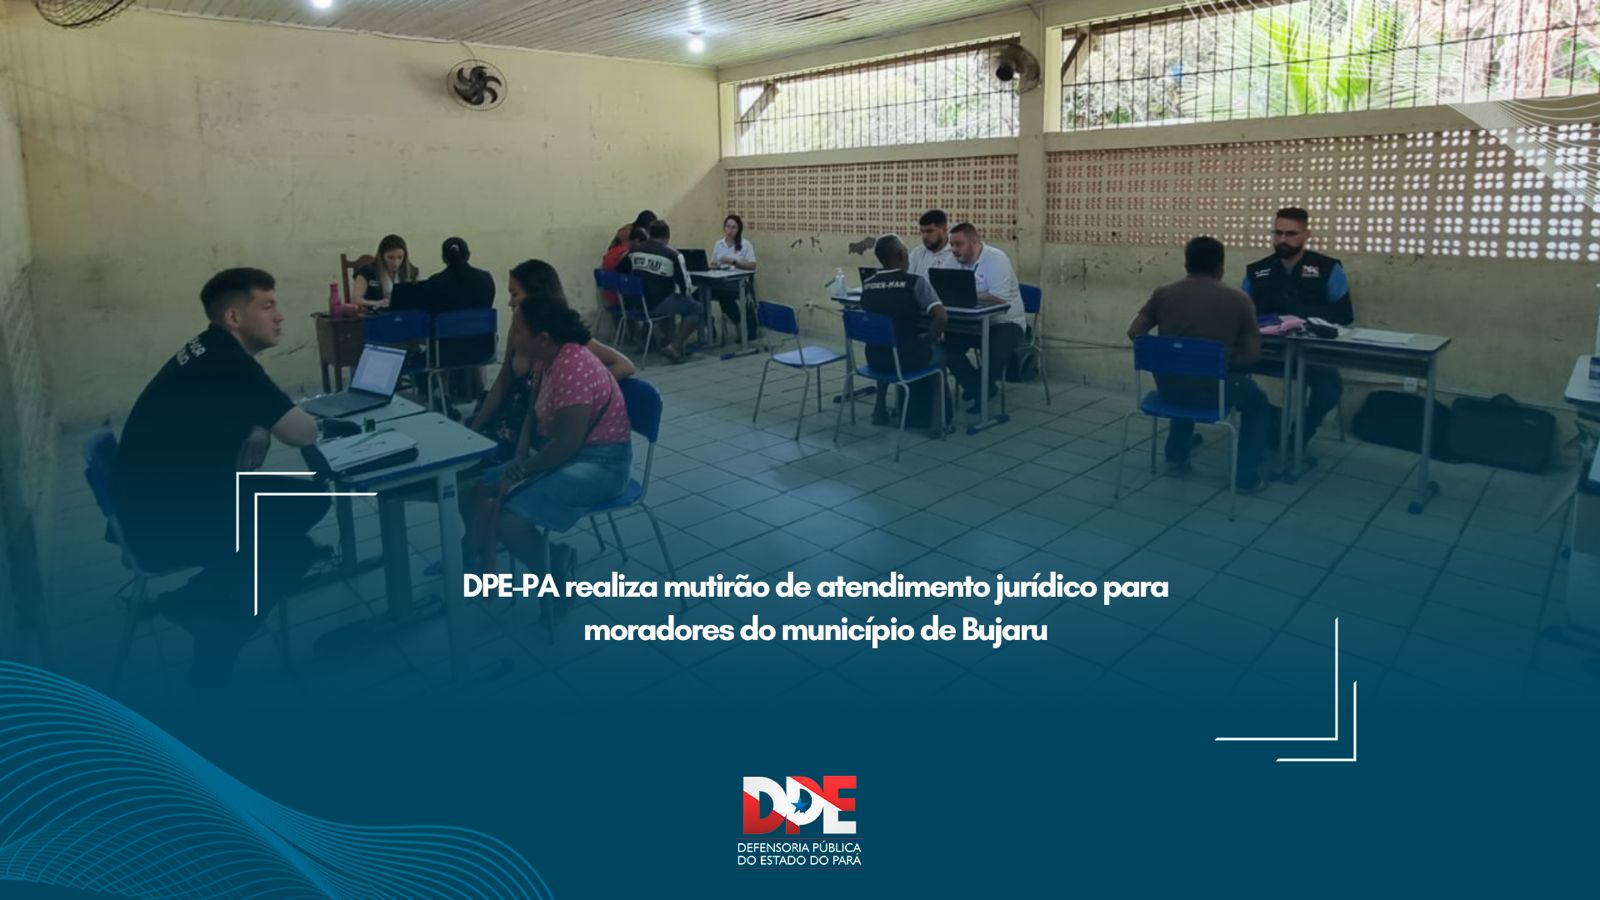 DPE-PA  realiza mutirão de atendimento jurídico para moradores do município de Bujaru